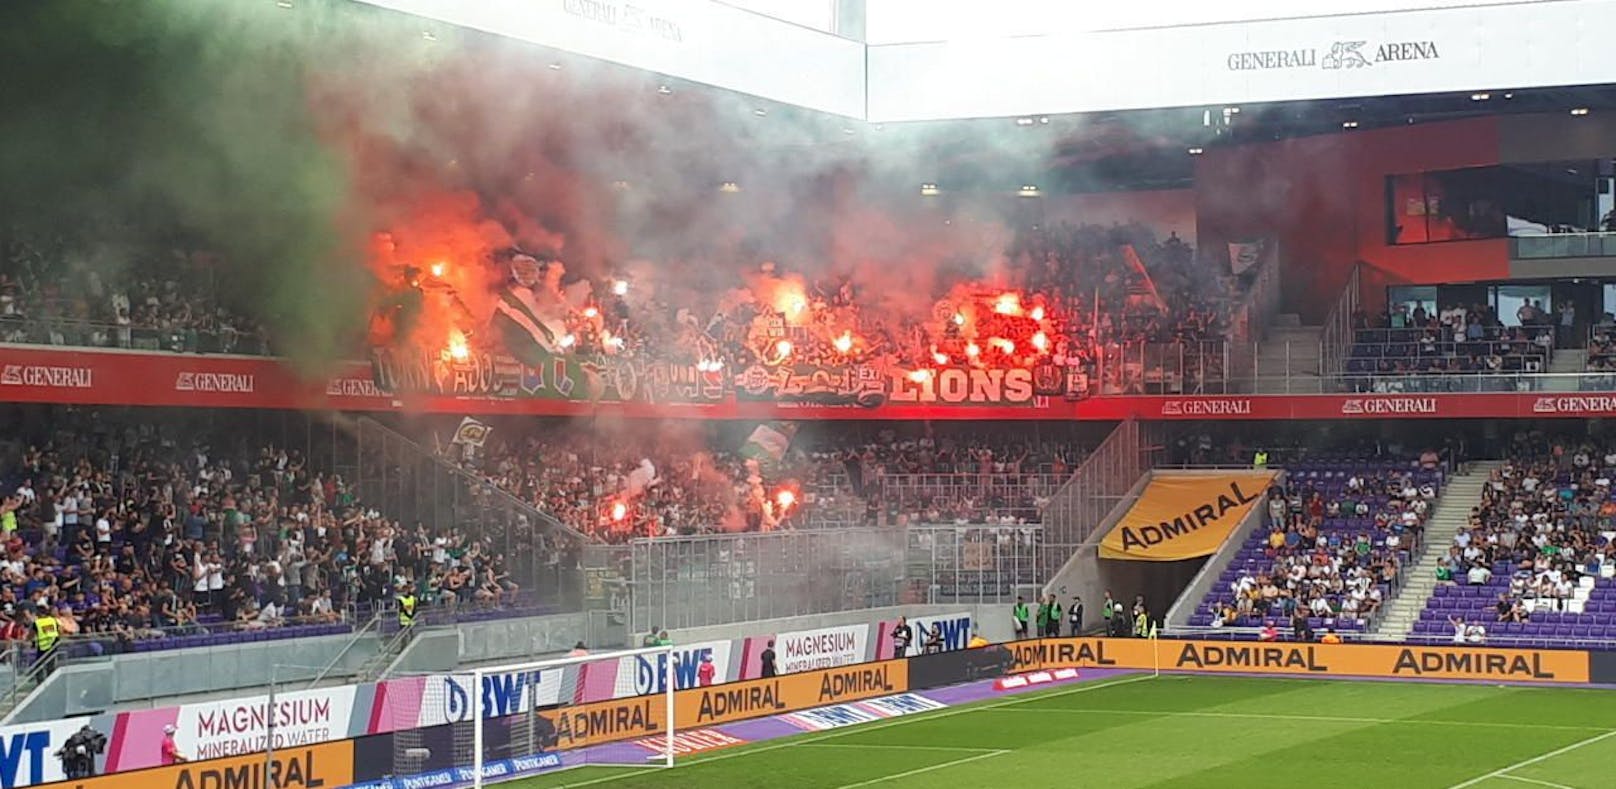 Derby-Time! Rapids Fans nebeln mit ihrer Pyrotechnik das Austria-Stadion ein. 